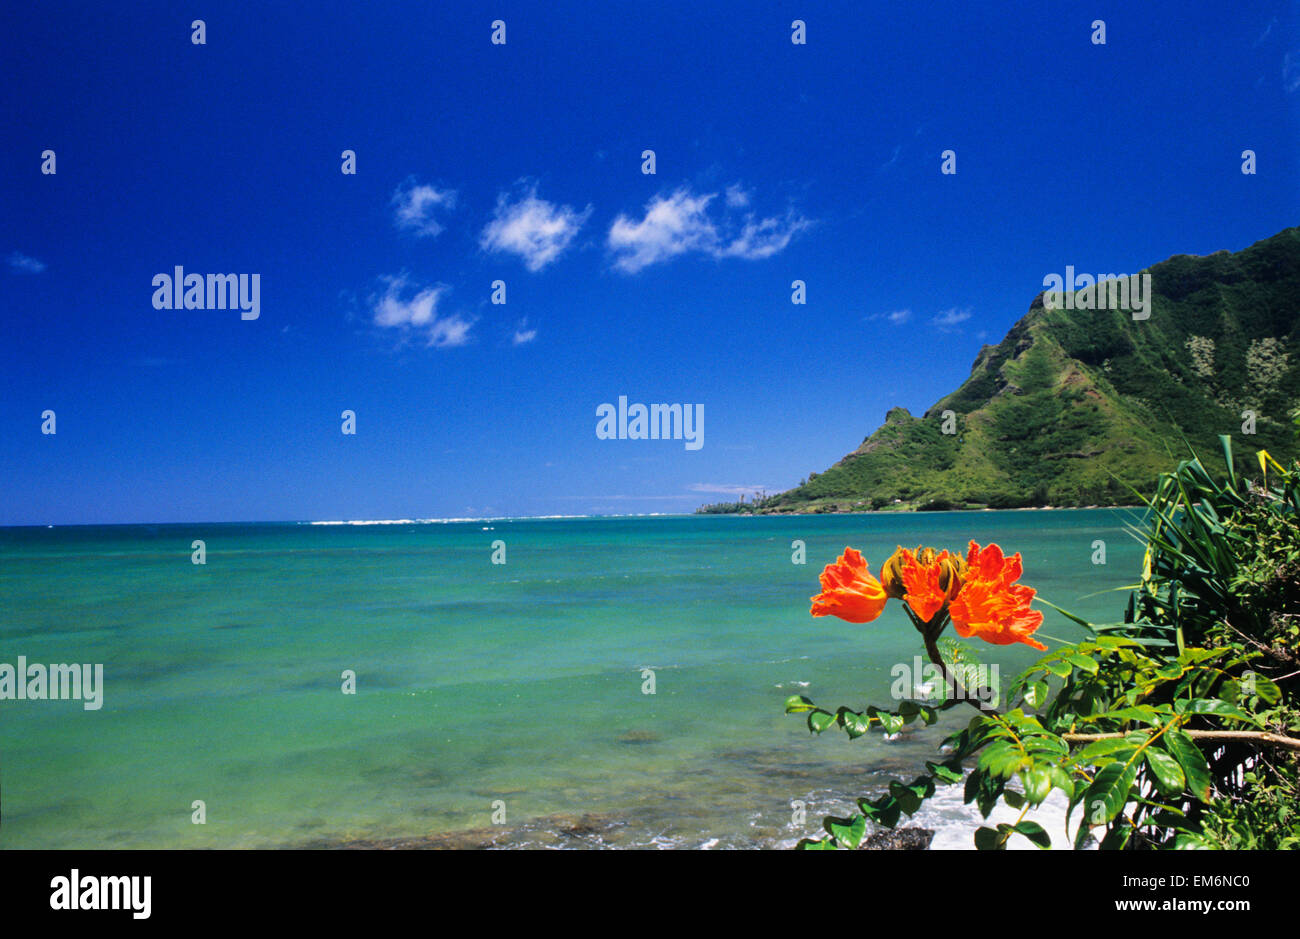 Stati Uniti d'America, Hawaii, Oahu, cancellare costa con arancio brillante fiore; Kahana Bay, rigogliosa montagna verde, blu cielo Foto Stock